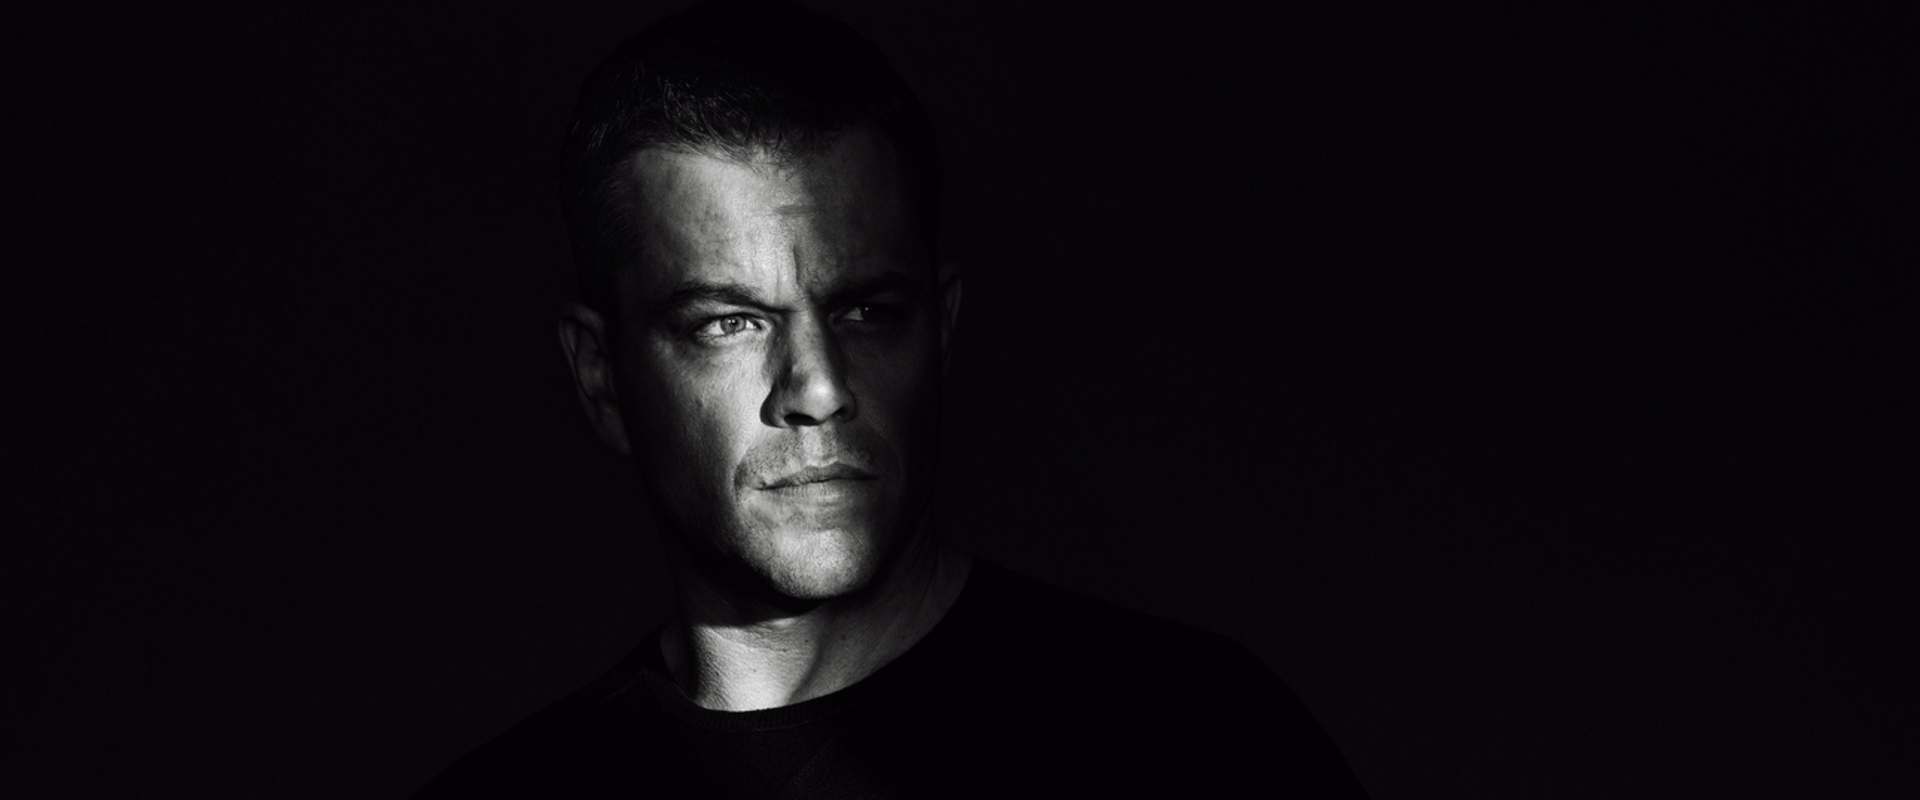 Jason Bourne background 1